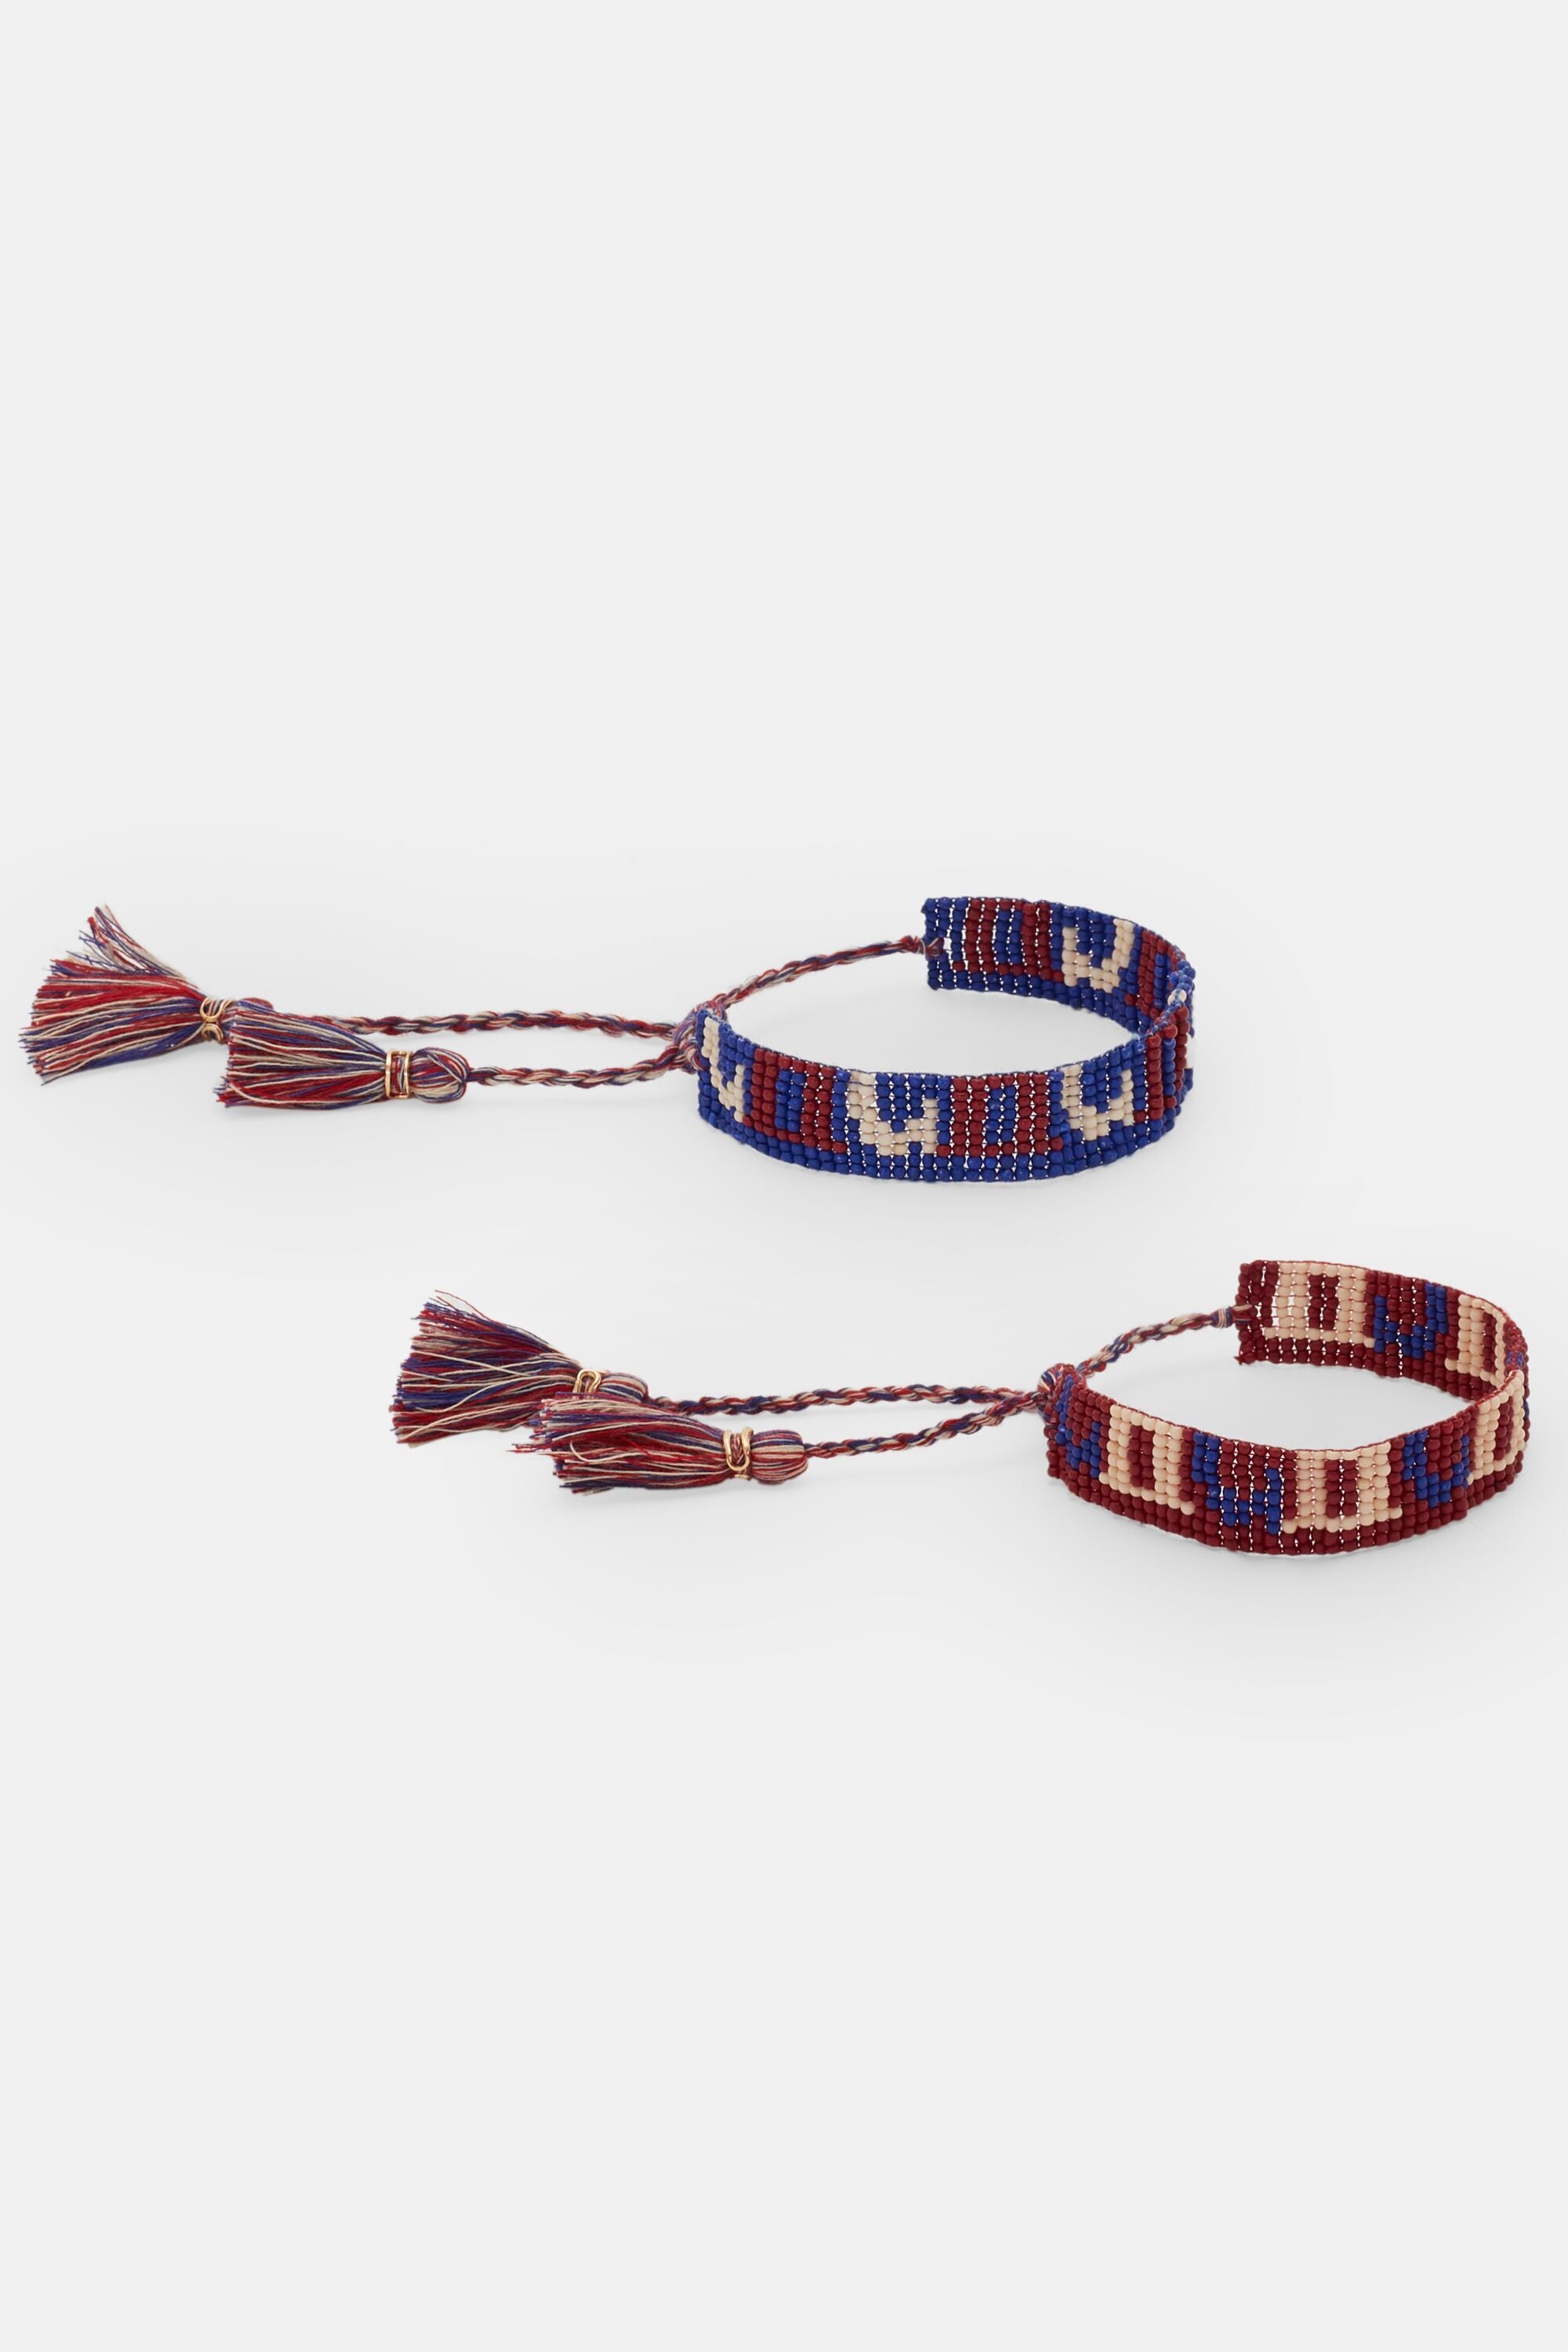 Lock & Key Charm Beaded Chain Bracelet For Women | BuDhaGirl